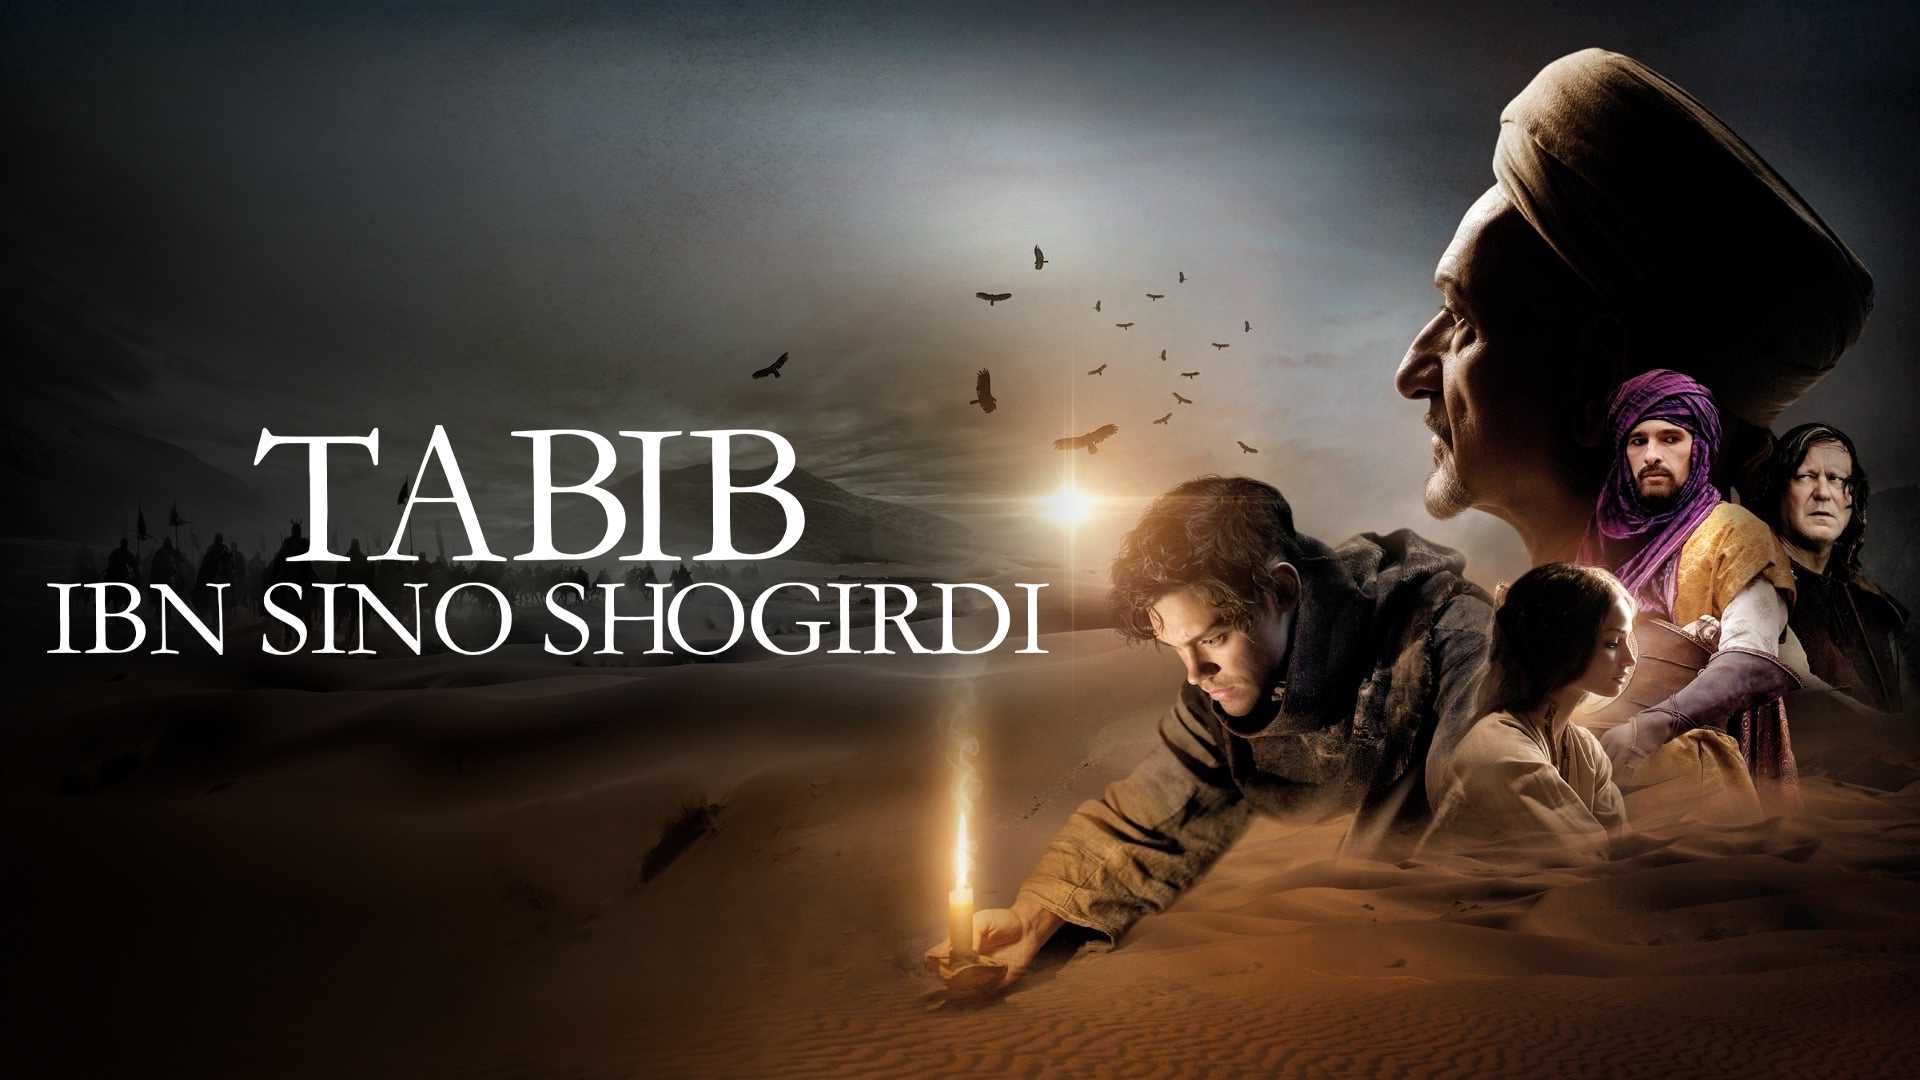 Tabib:Ibn Sino shogirdi